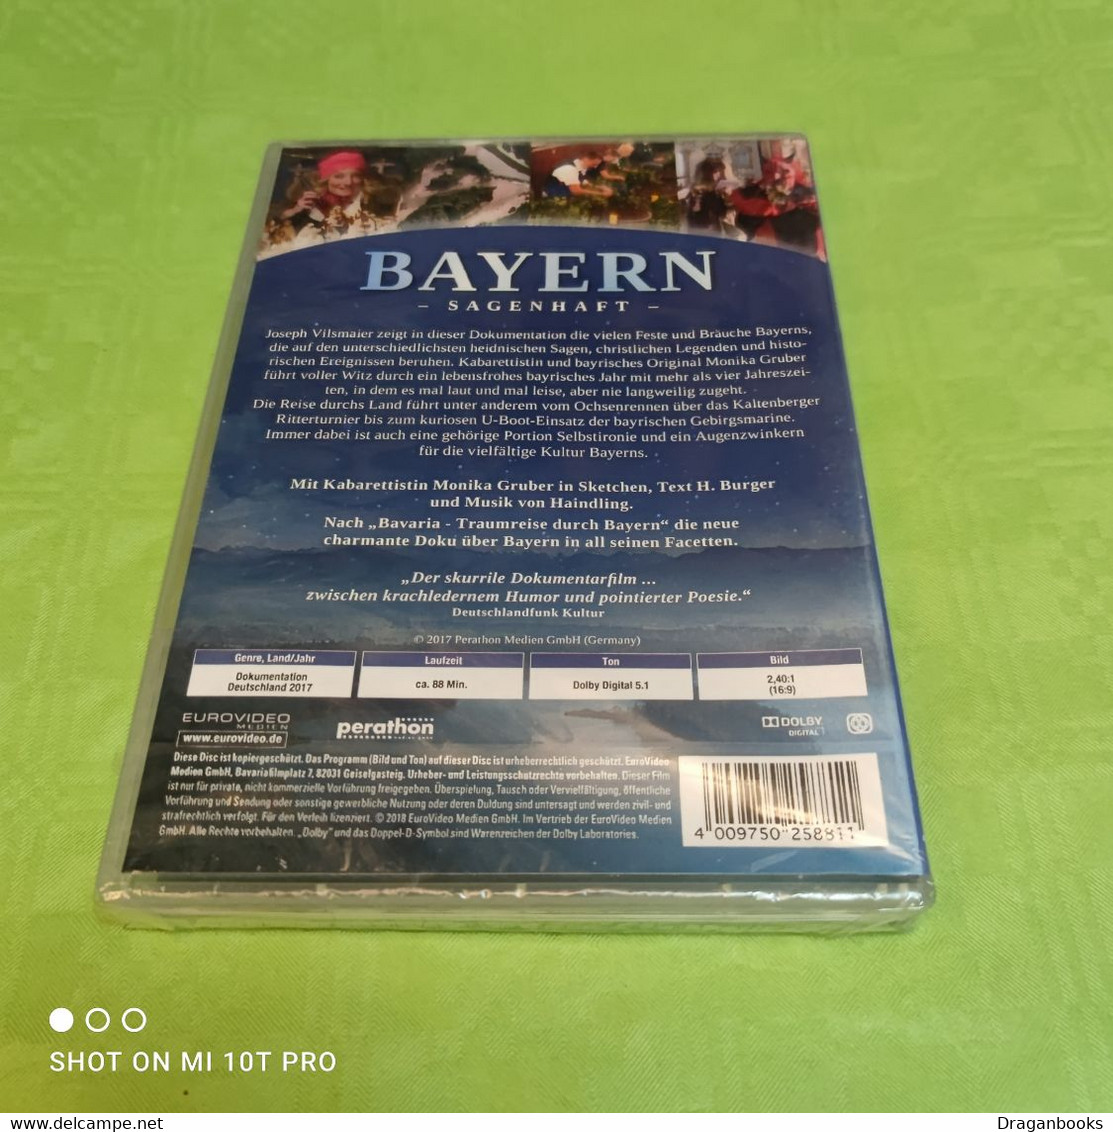 Bayern Sagenhaft - Viajes